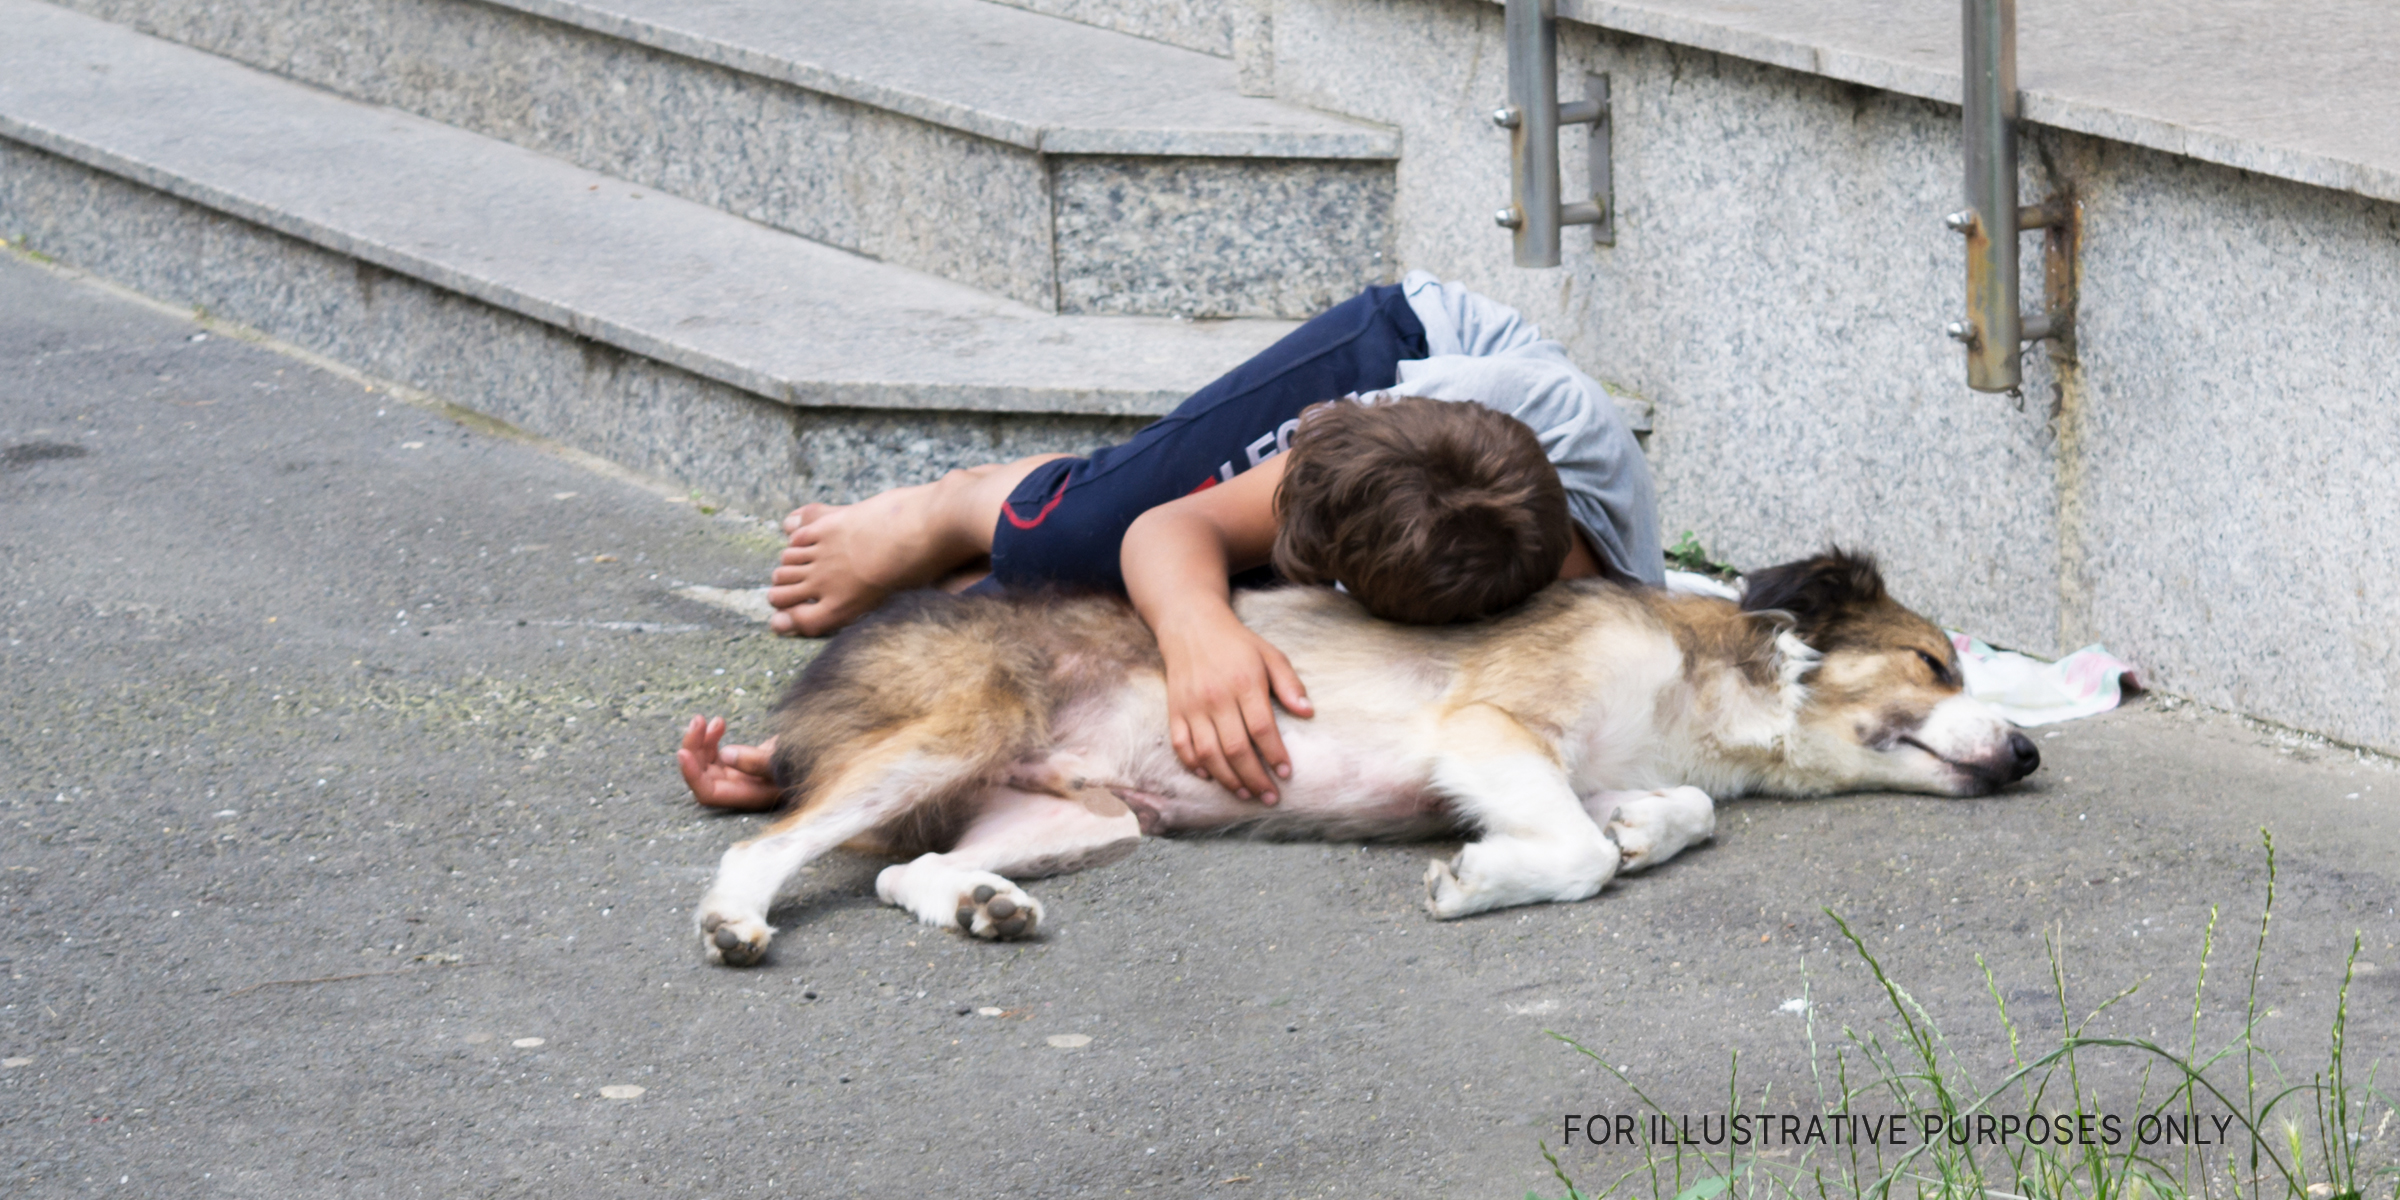 Boy lying on dog in street | Source: Shutterstock